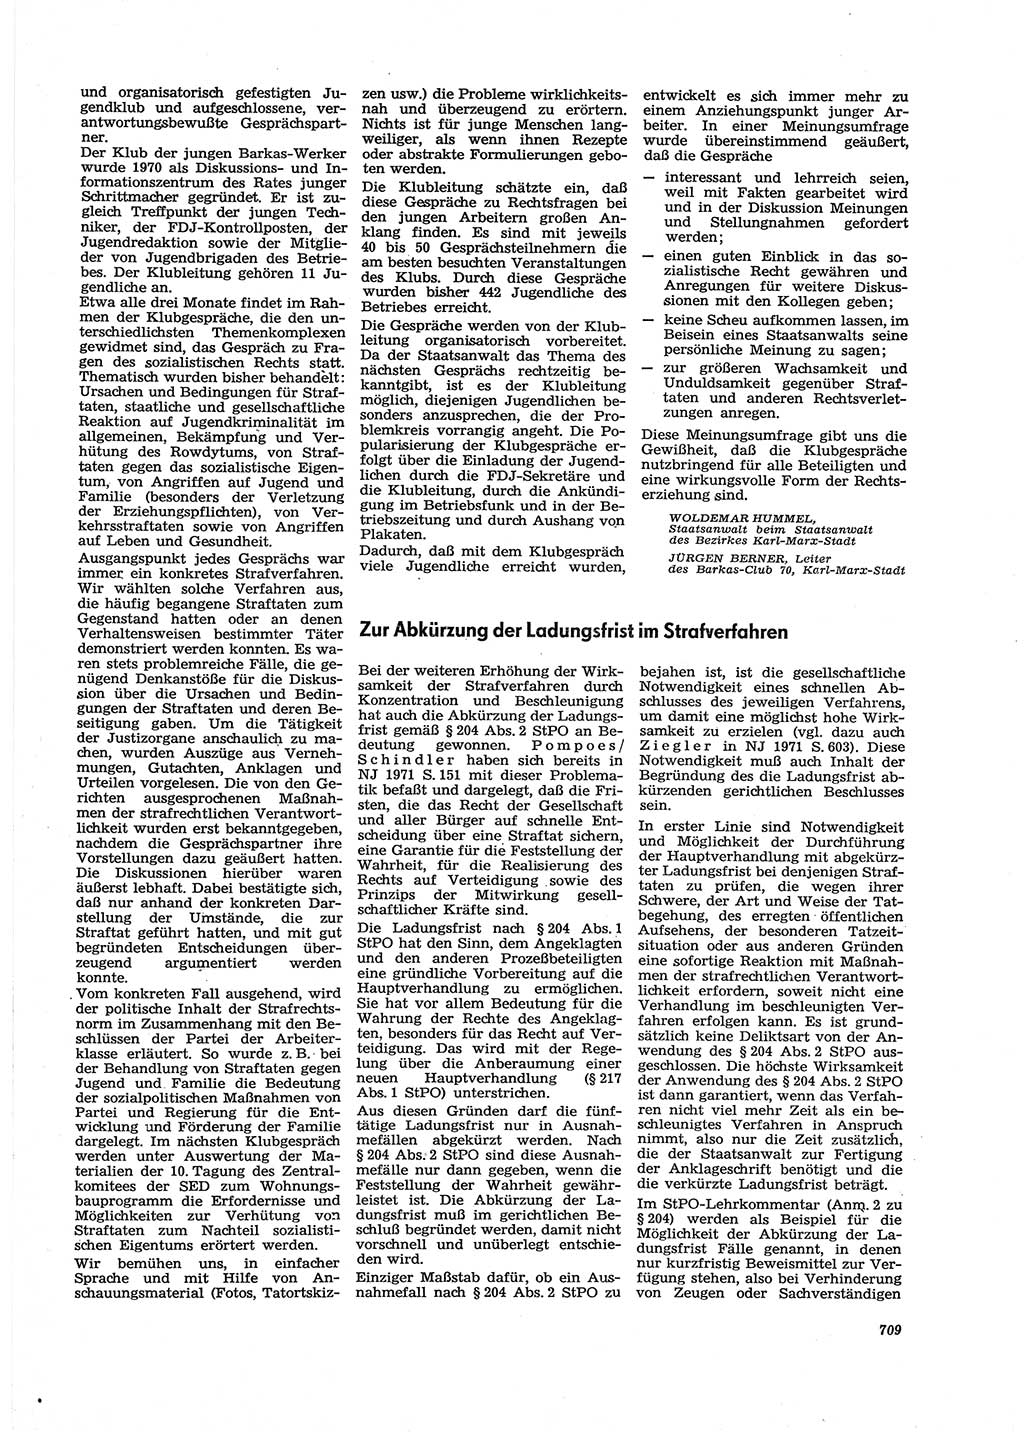 Neue Justiz (NJ), Zeitschrift für Recht und Rechtswissenschaft [Deutsche Demokratische Republik (DDR)], 27. Jahrgang 1973, Seite 709 (NJ DDR 1973, S. 709)